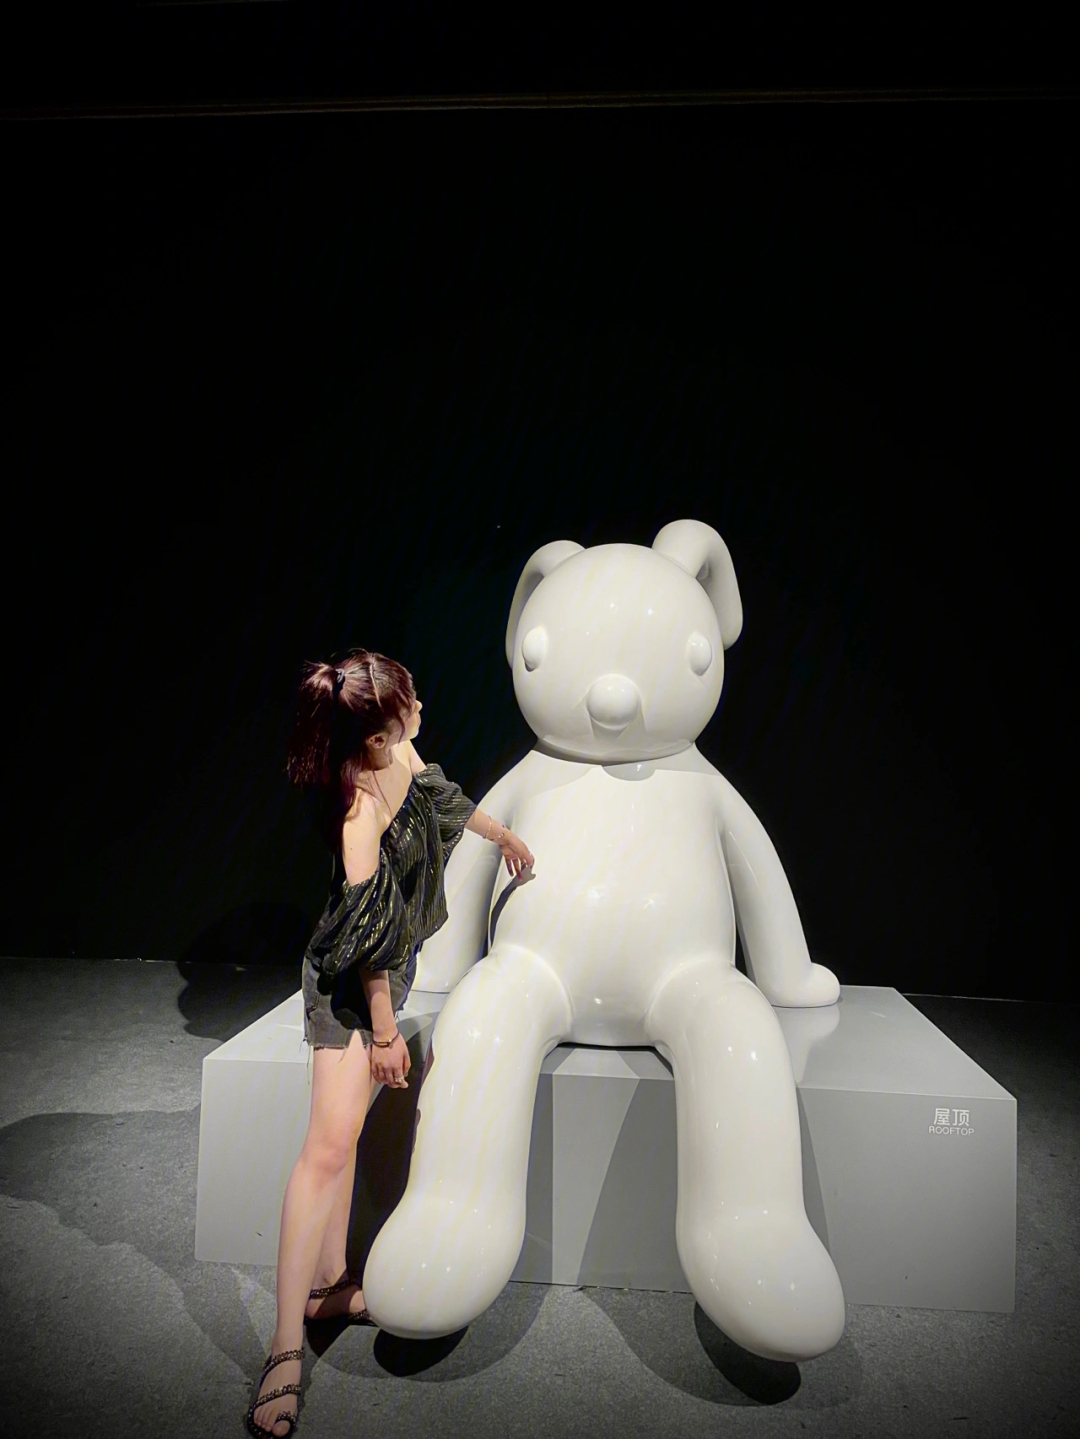 治愈系艺术家张占占携其知名pupu熊与新作兔子雕塑在上海宝龙美术馆